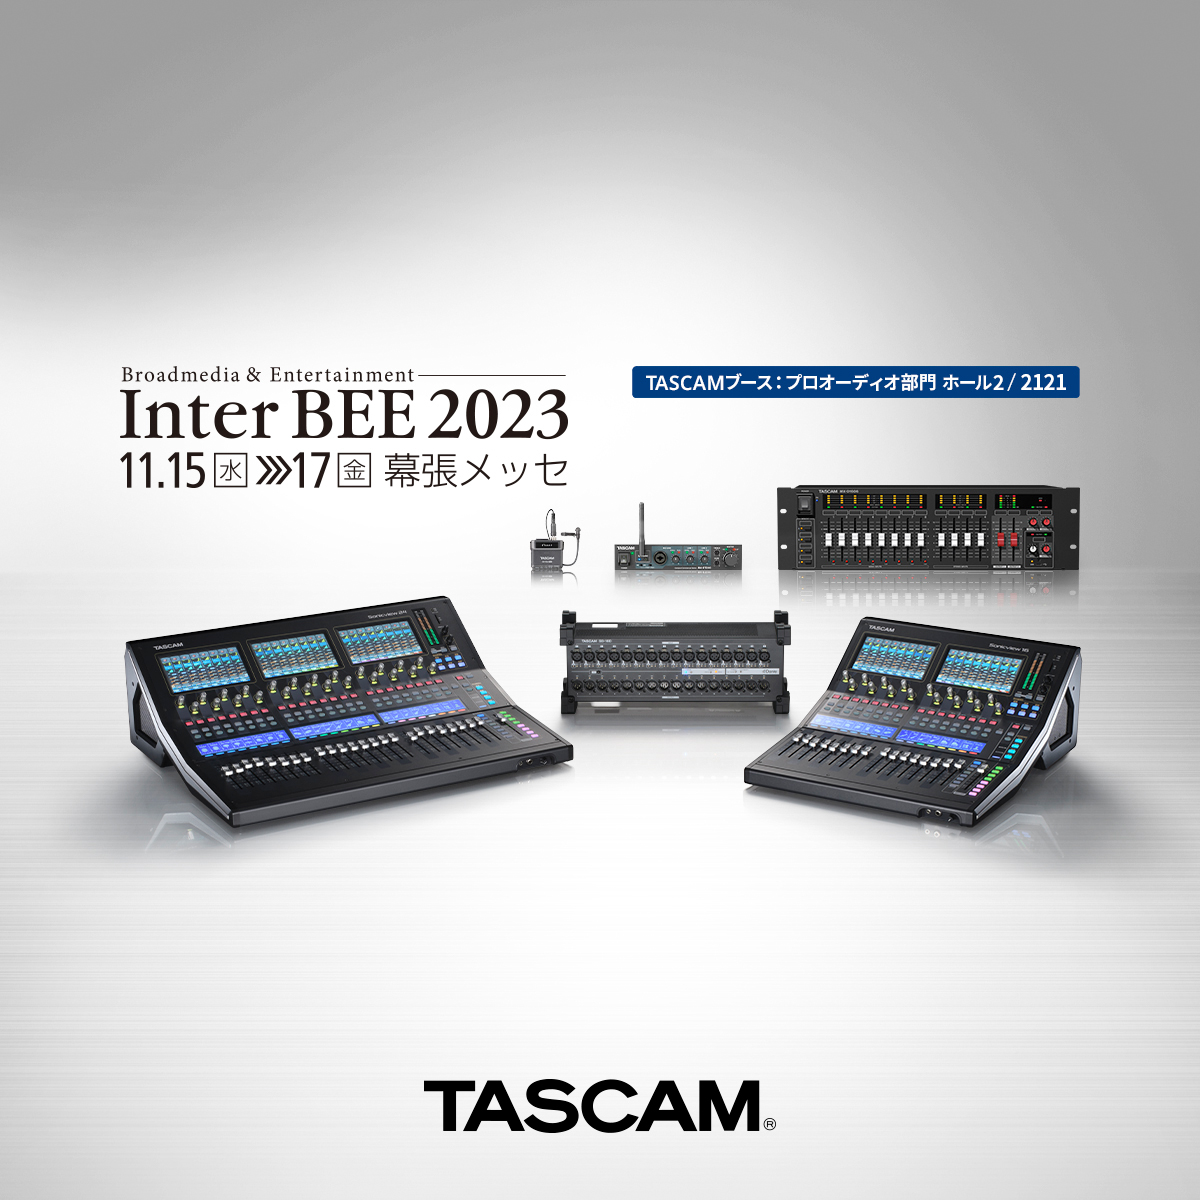 『Inter BEE 2023』出展のお知らせ。 機能追加されたデジタルミキサー『TASCAM Sonicviewシリーズ』や設備用ミキシングアンプ、次世代ピンマイクレコーダーなどを展示。